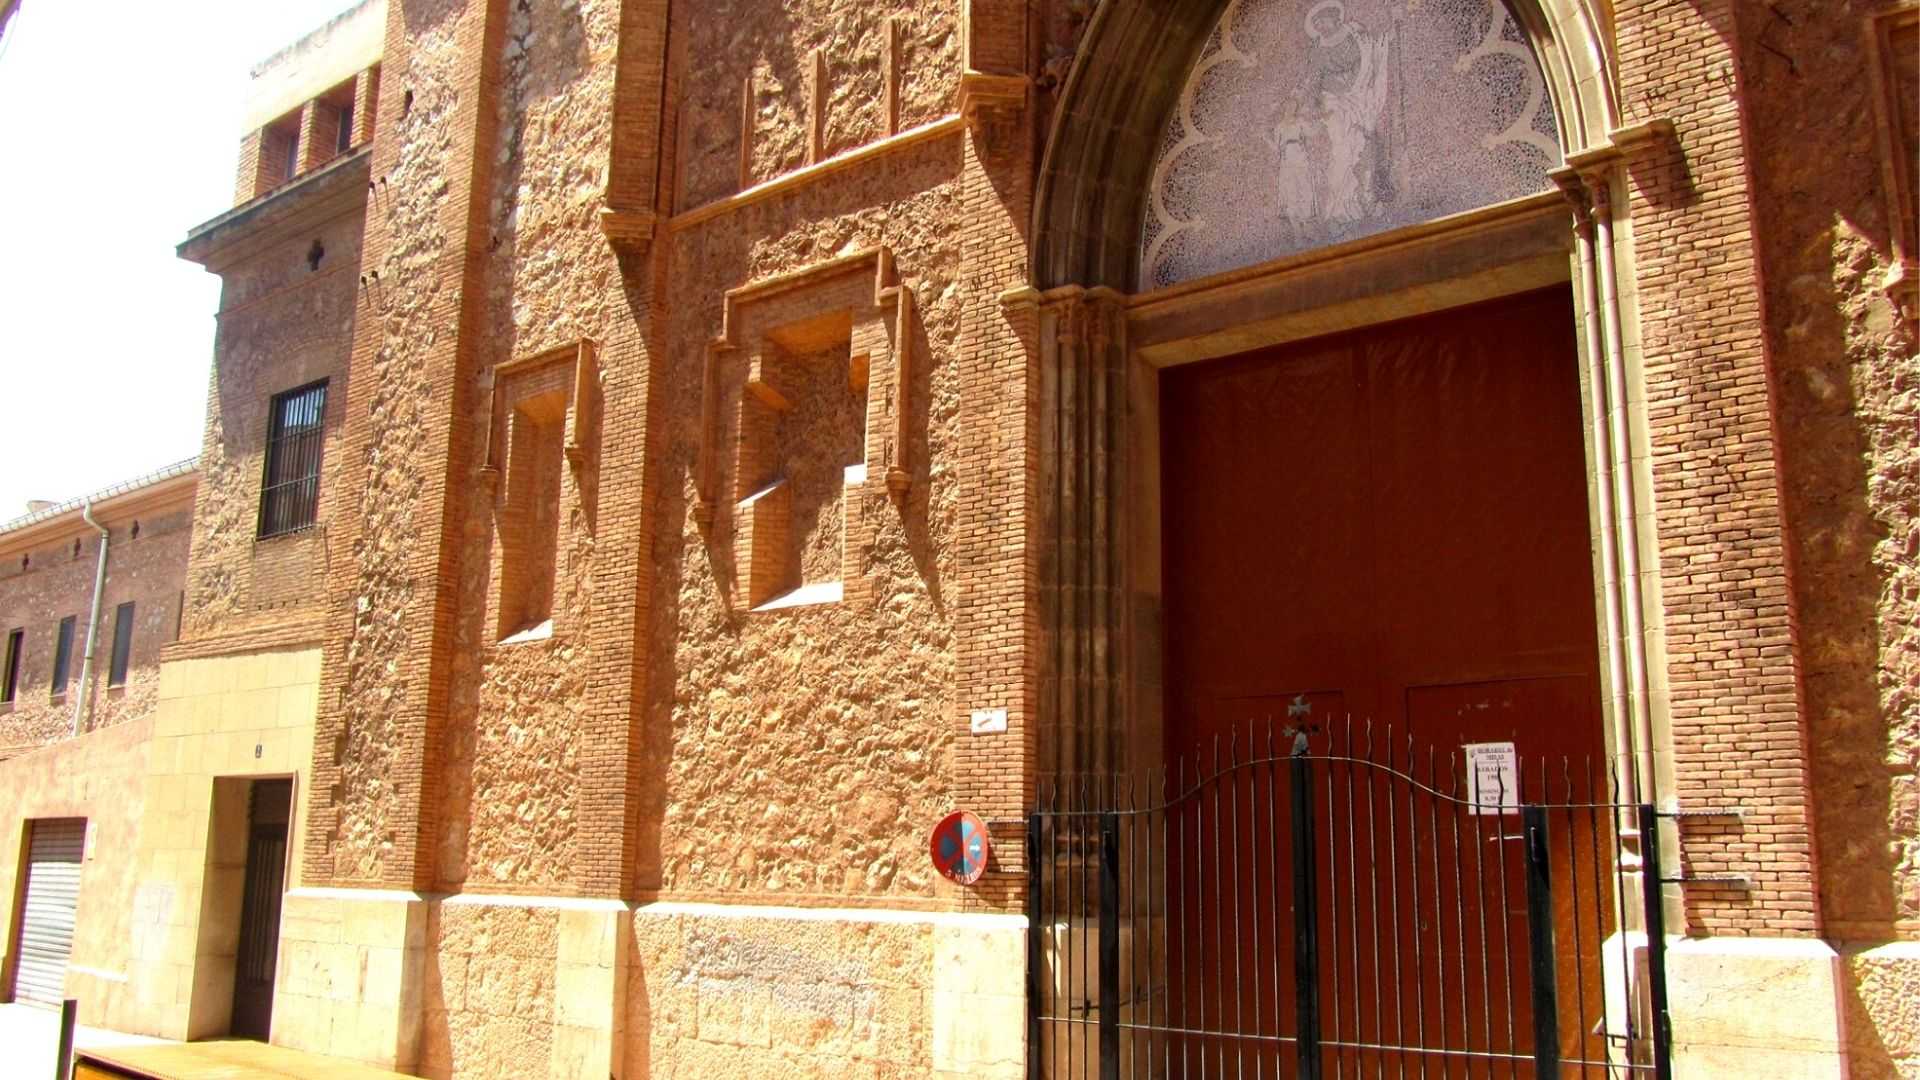 Temple De Sant Josep dels Carmelites Descalços